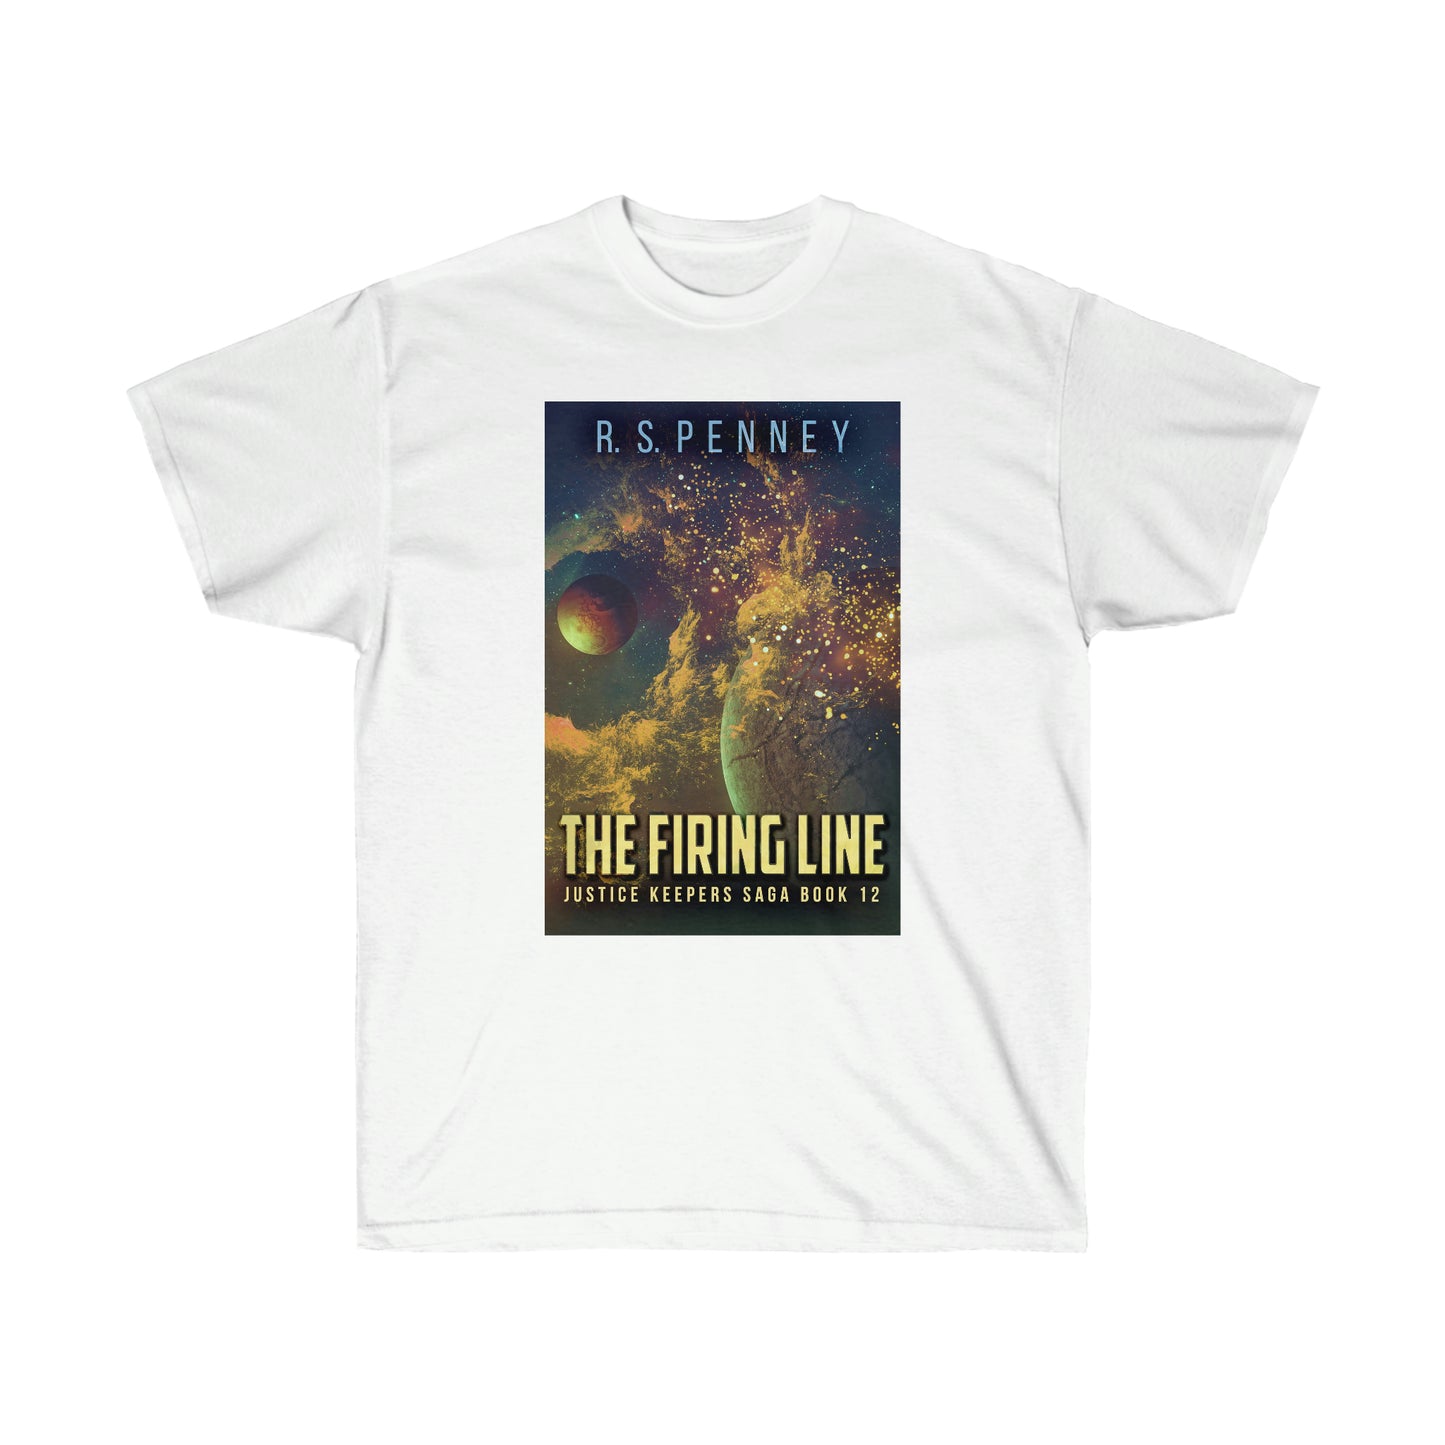 The Firing Line - Unisex T-Shirt